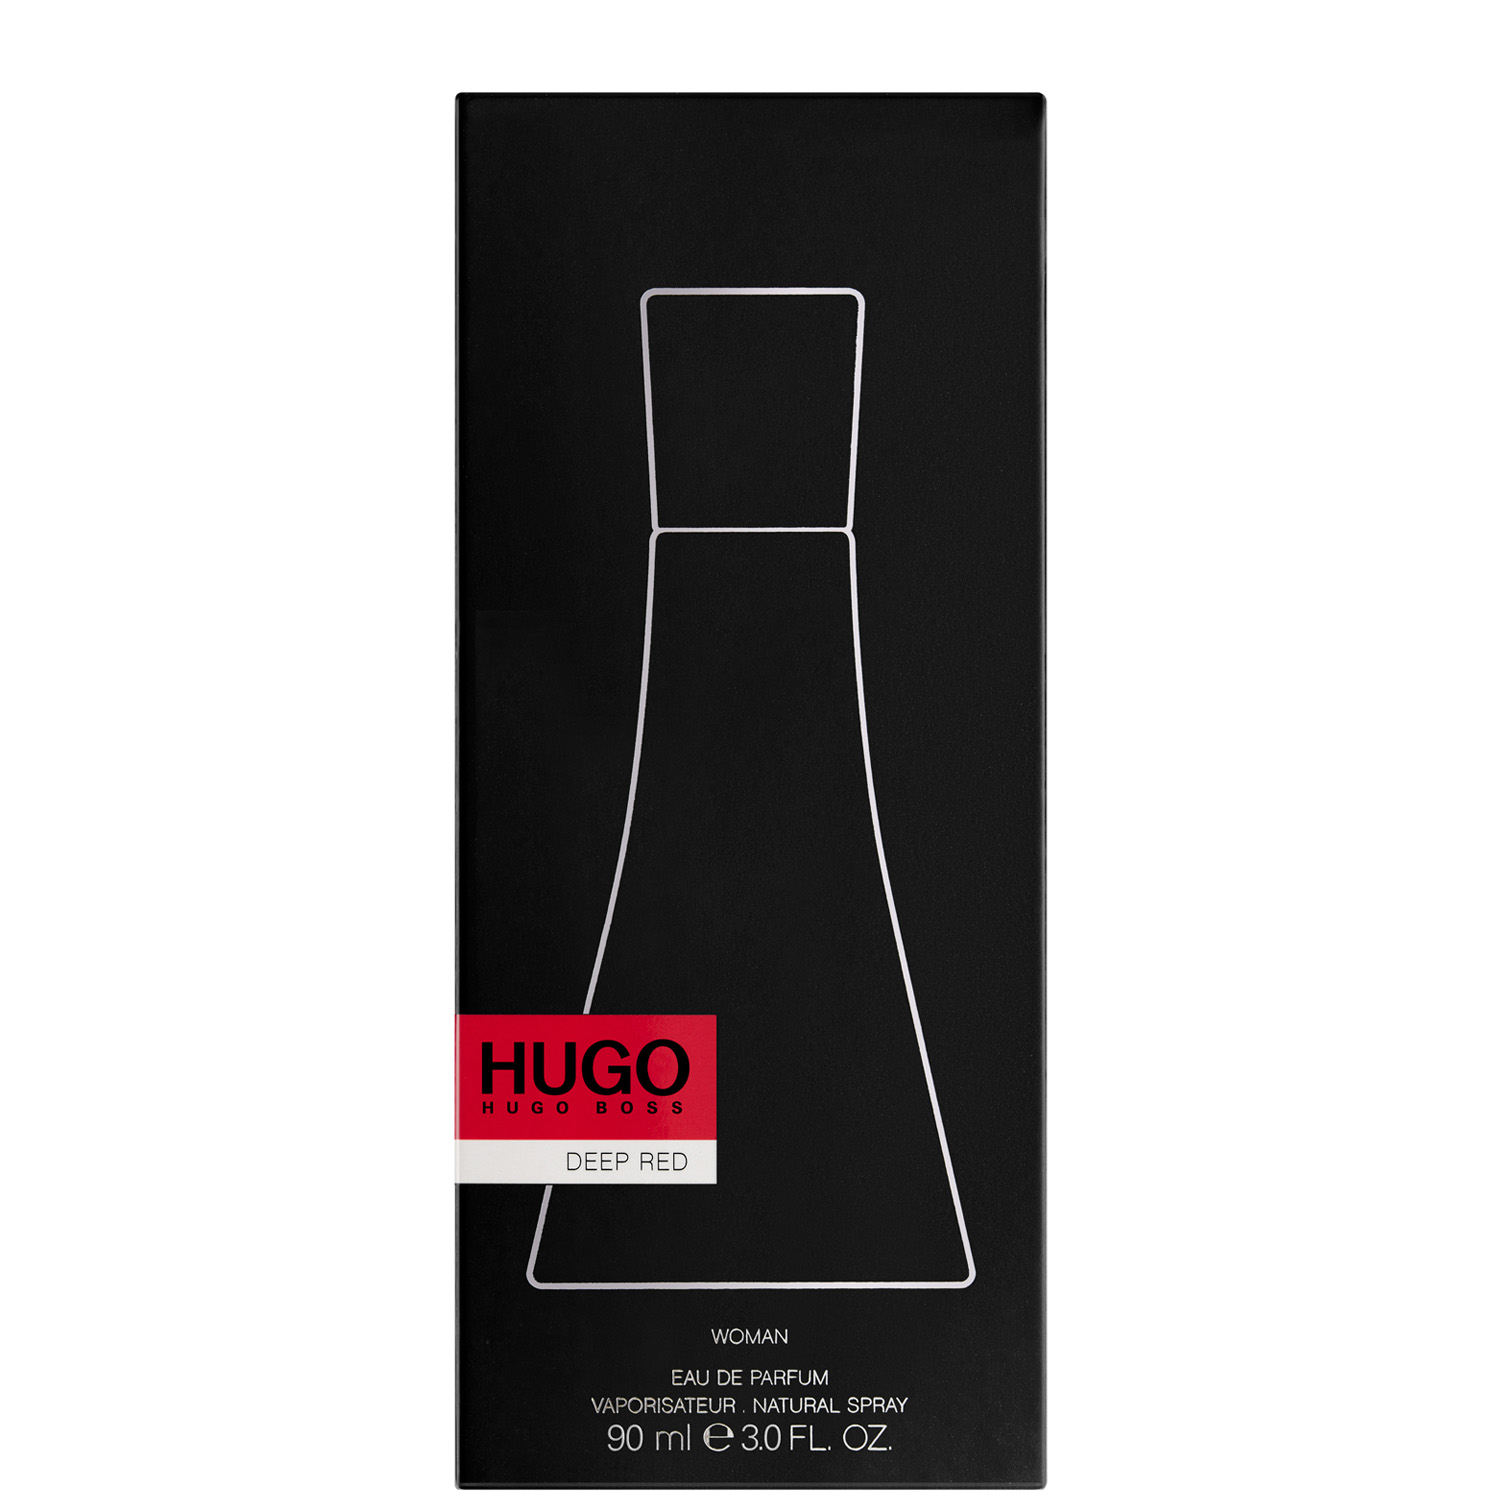 Hugo Boss Hugo Deep Red Eau de Parfum 90ml